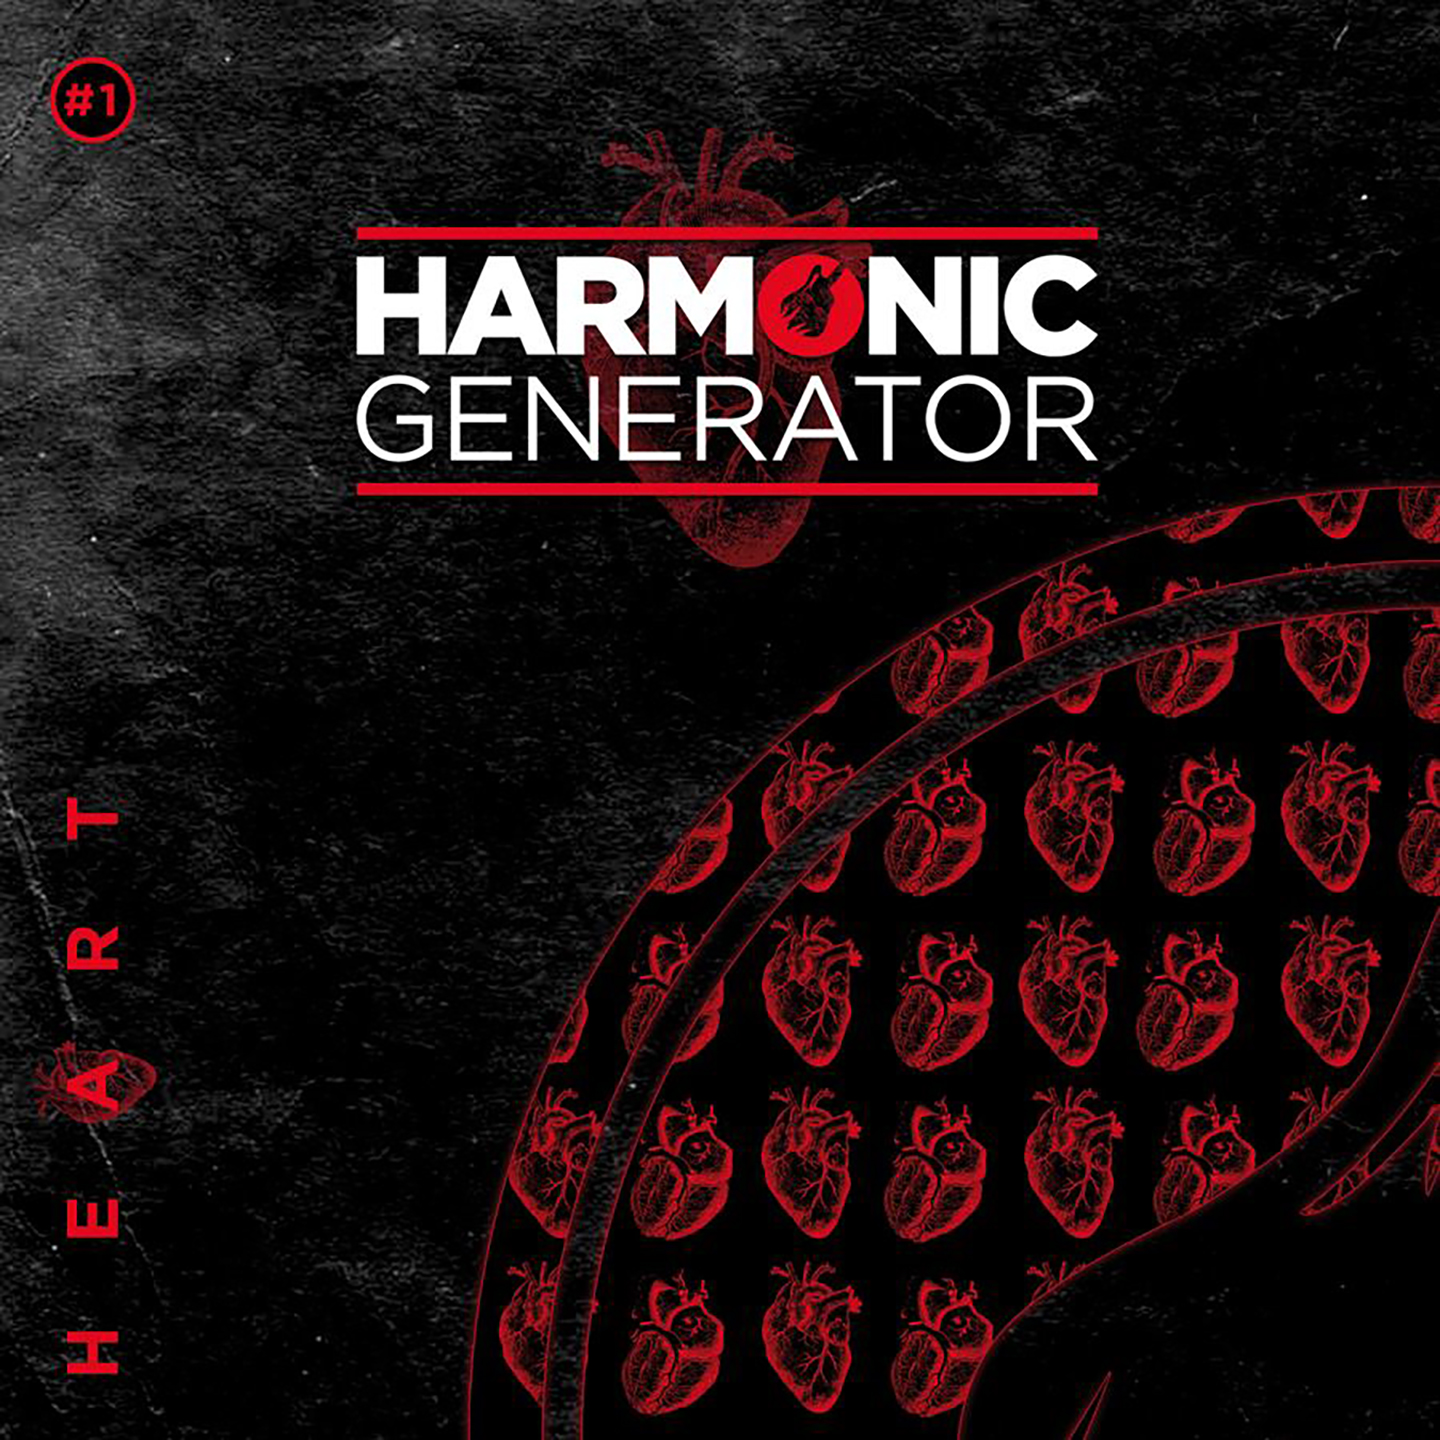 Cover de l'EP d'Harmonic Generator - Heart. Réalisé par Loseou